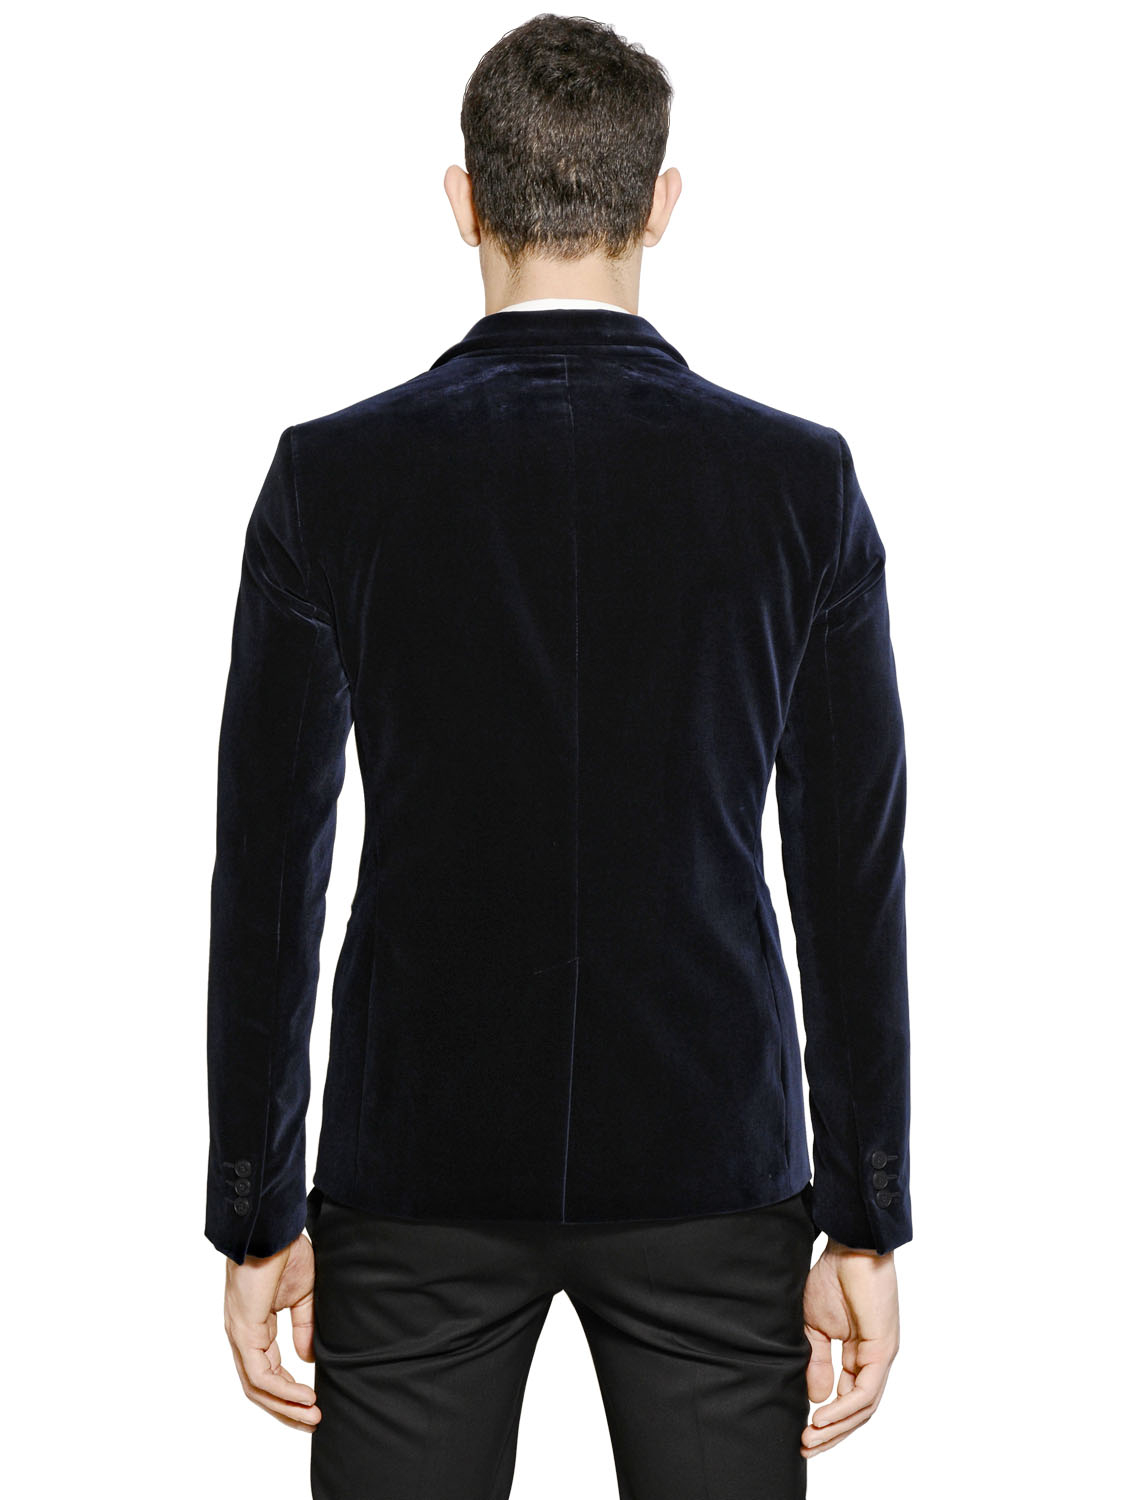 Emporio Armani Velvet Jacket in Navy (Blue) for Men - Lyst